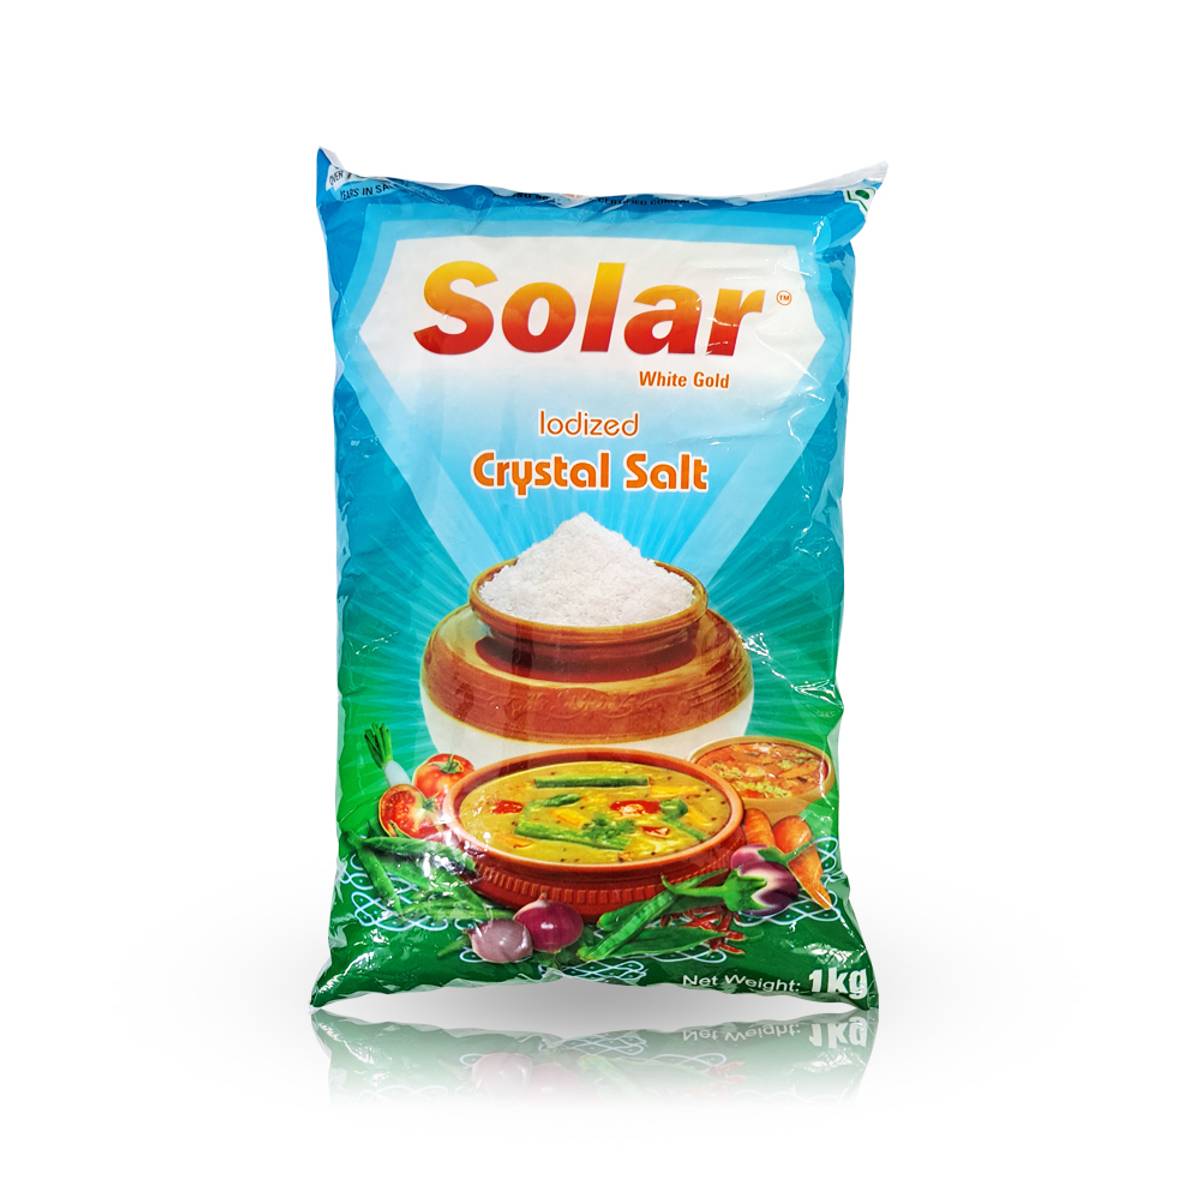 Solar Crystal Salt,1kg